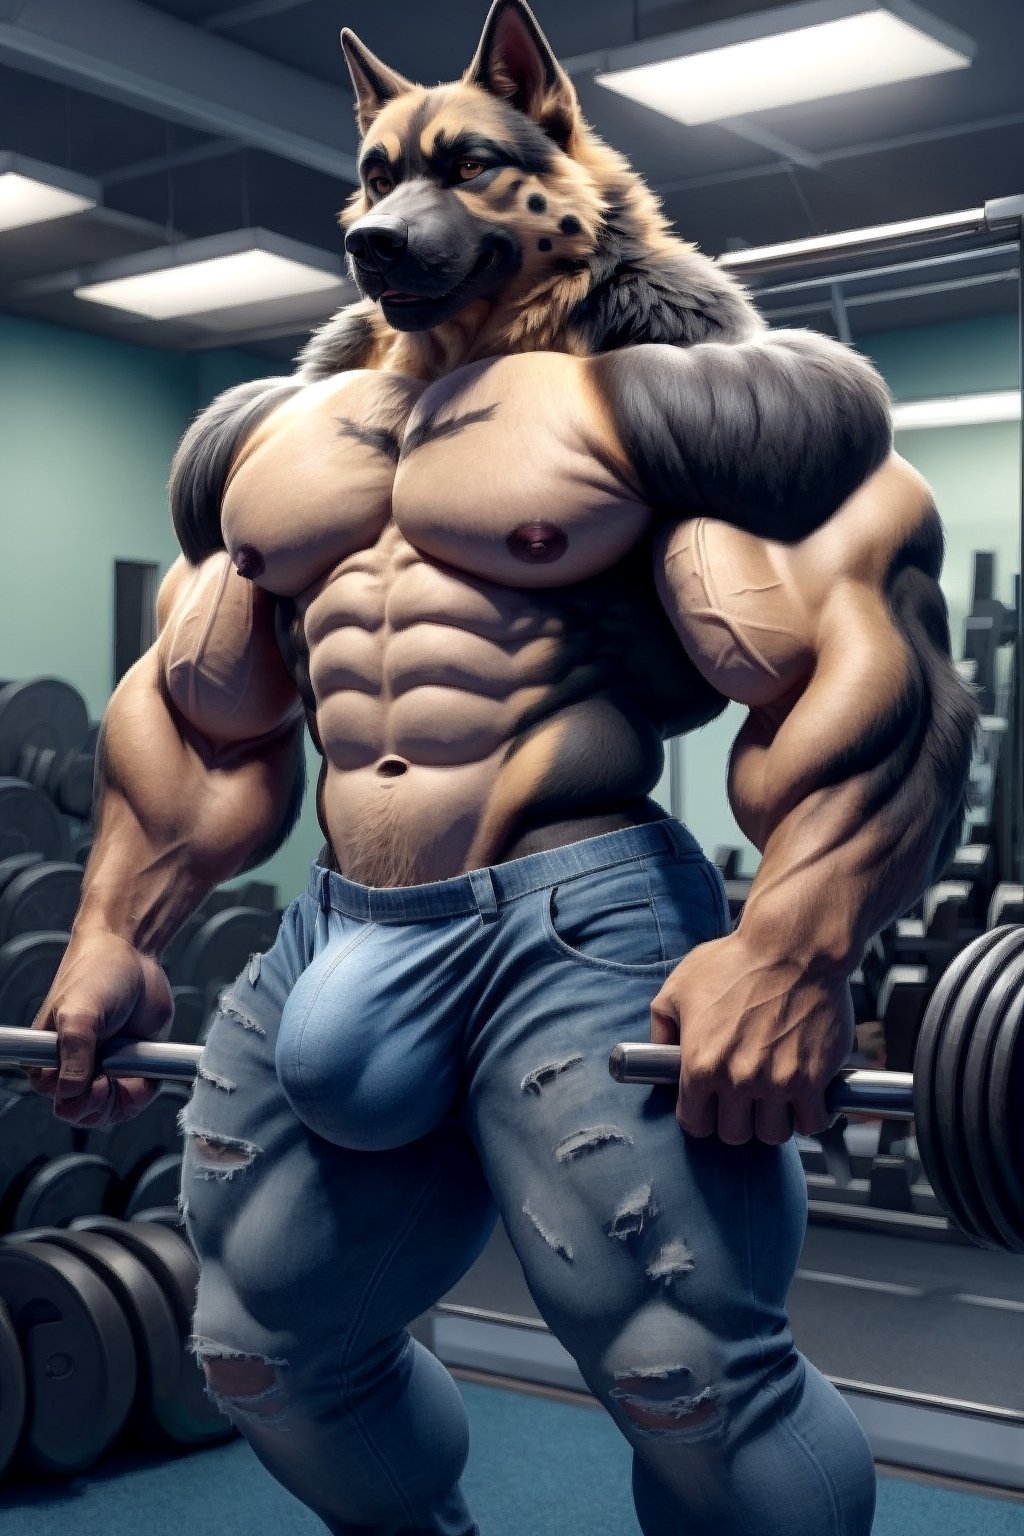  german shepherd dog muscle jeans nipples, bulge, gym